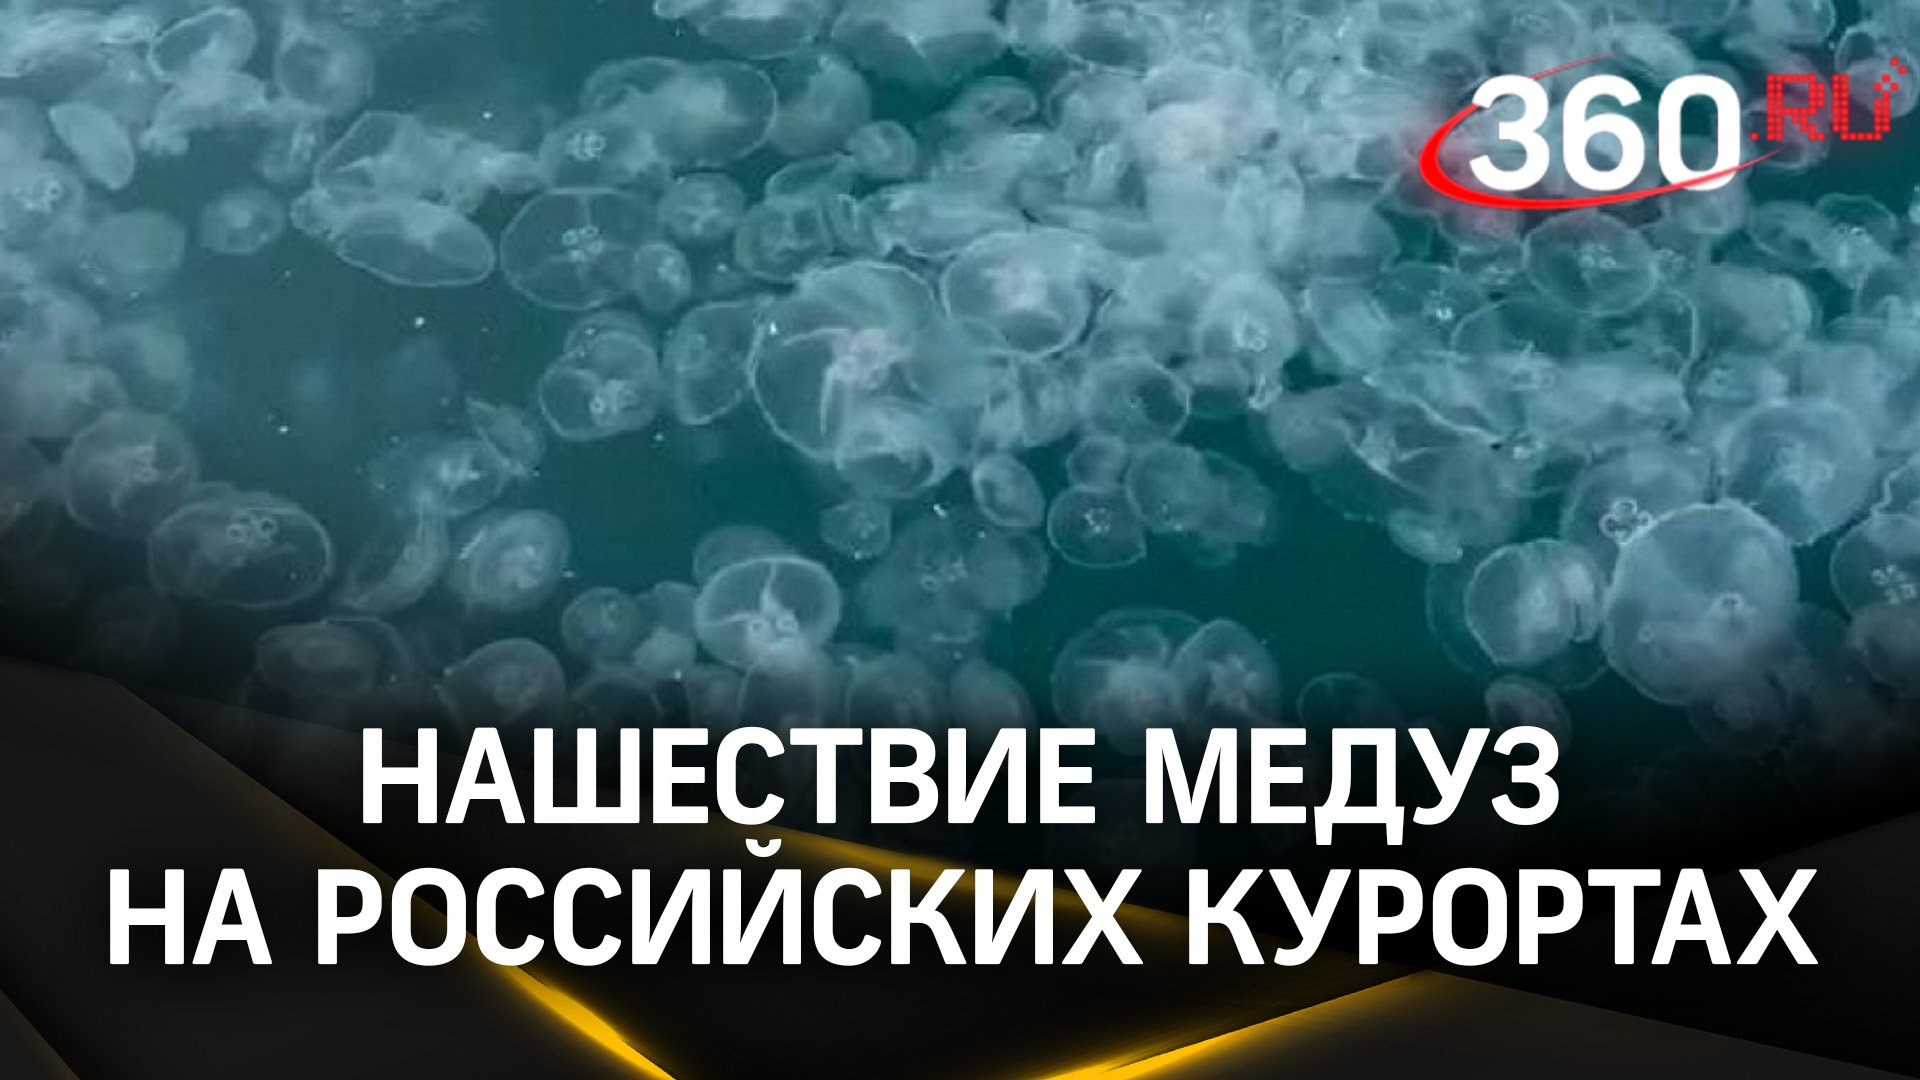 Полчища медуз заполонили российские курорты: жители Анапы прозвали это явление «кисельными берегами»